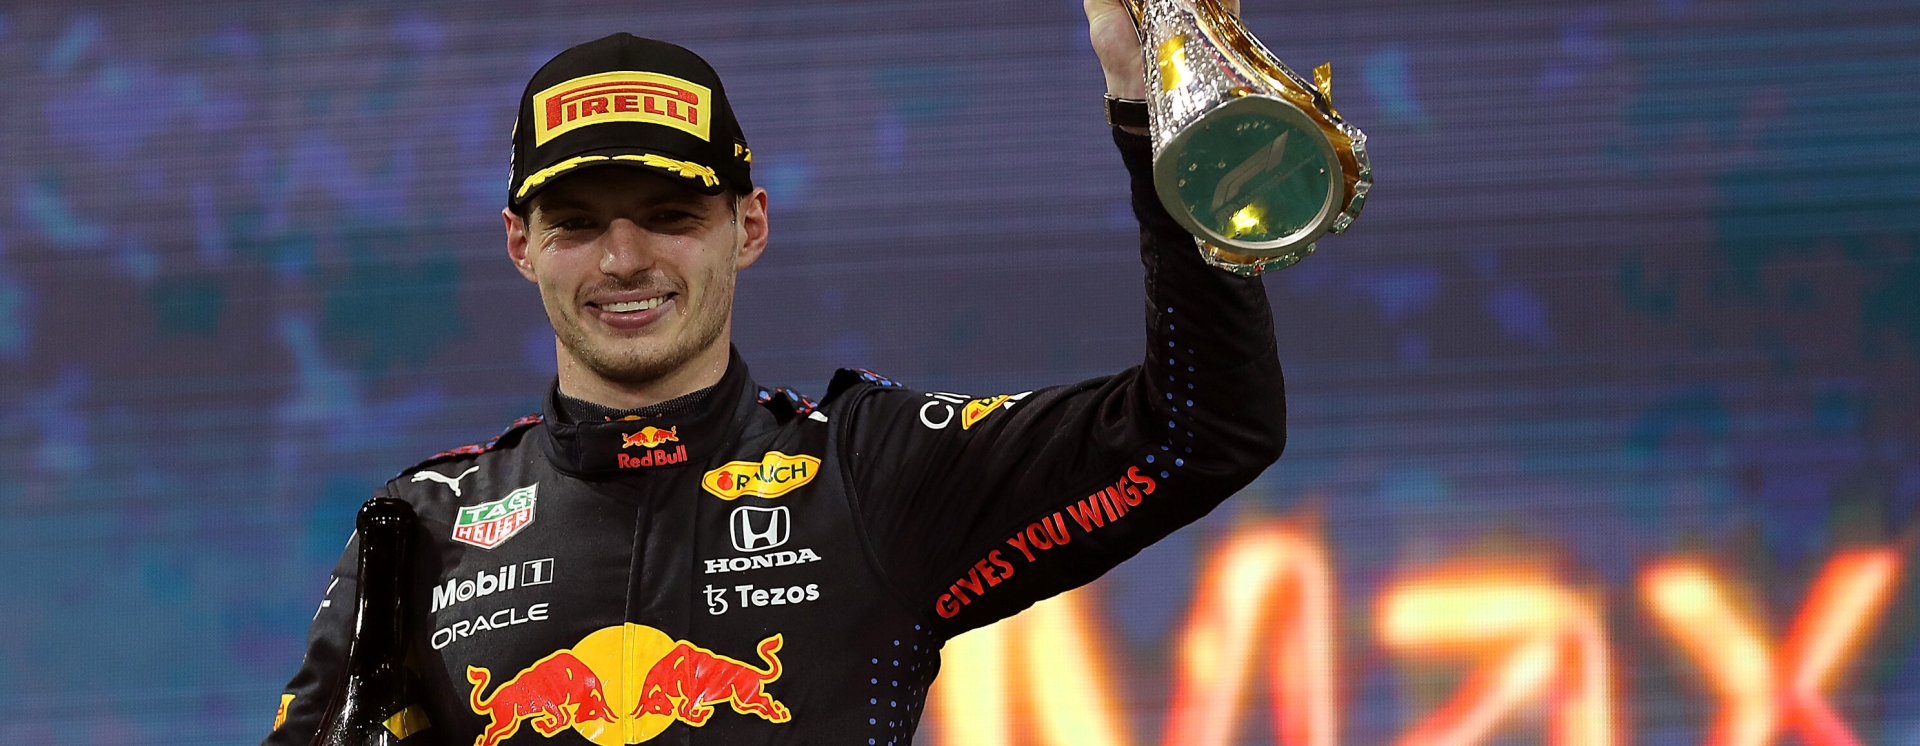 Μαξ Φερστάπεν: Ο νέος βασιλιάς της Formula 1